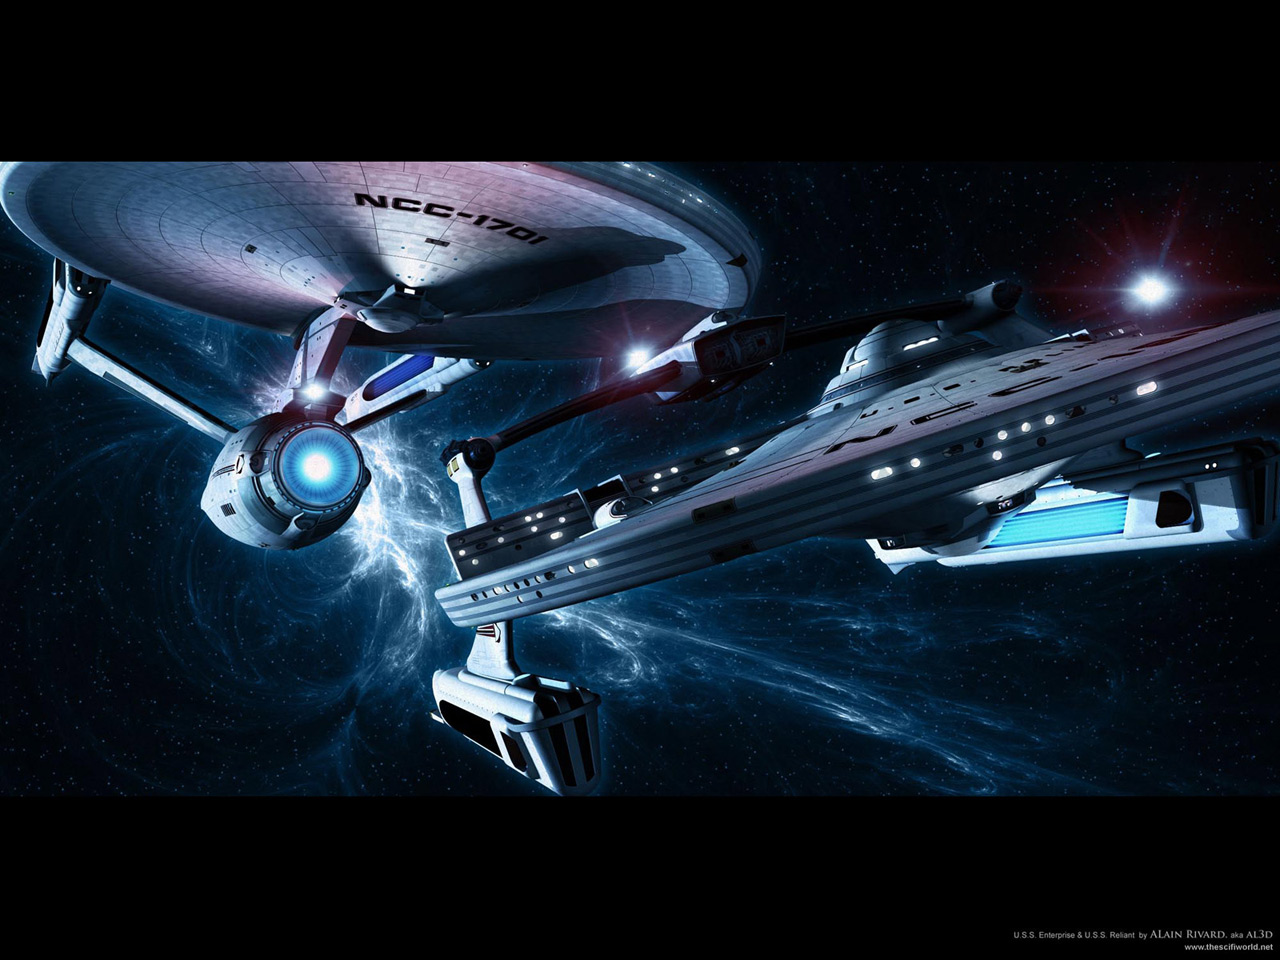 Star Trek Starships Uss Enterprise And Reliant On